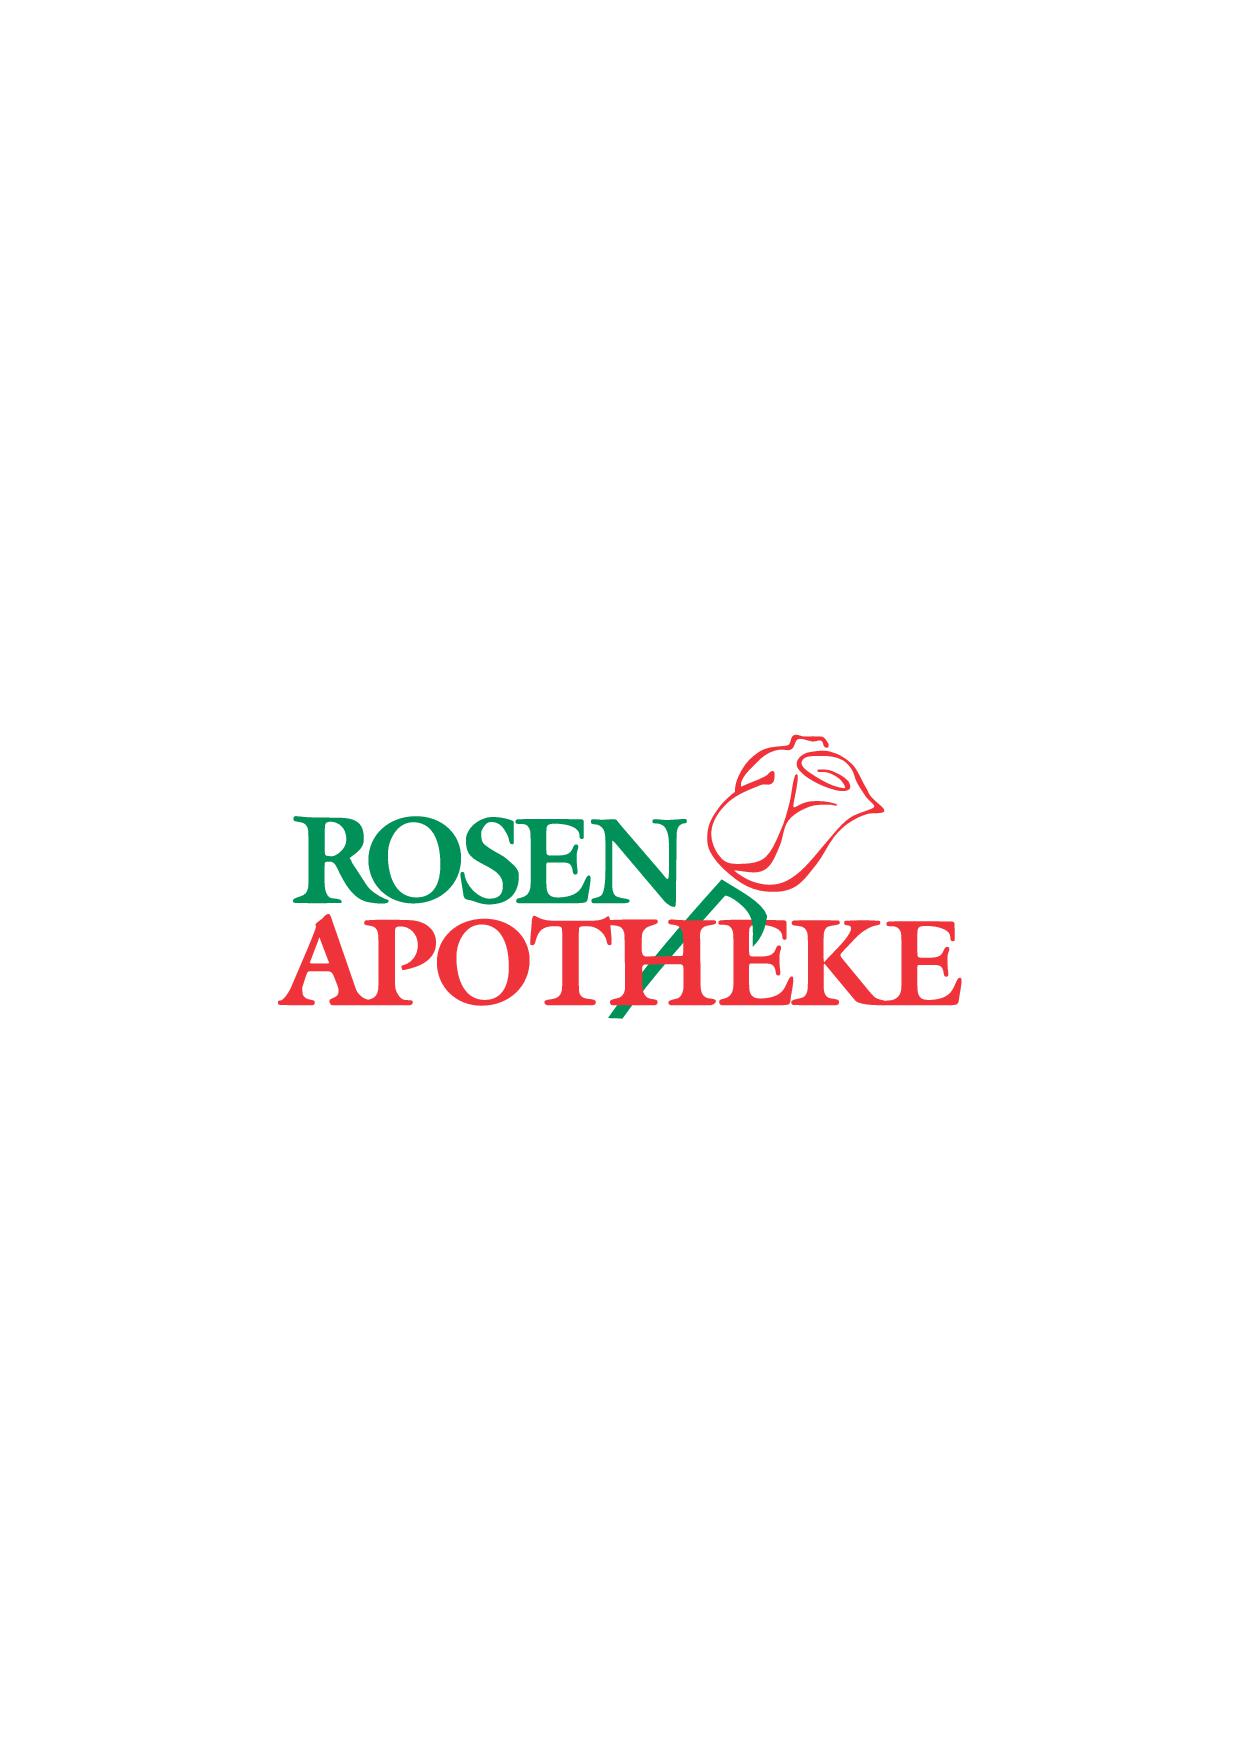 Rosen-Apotheke